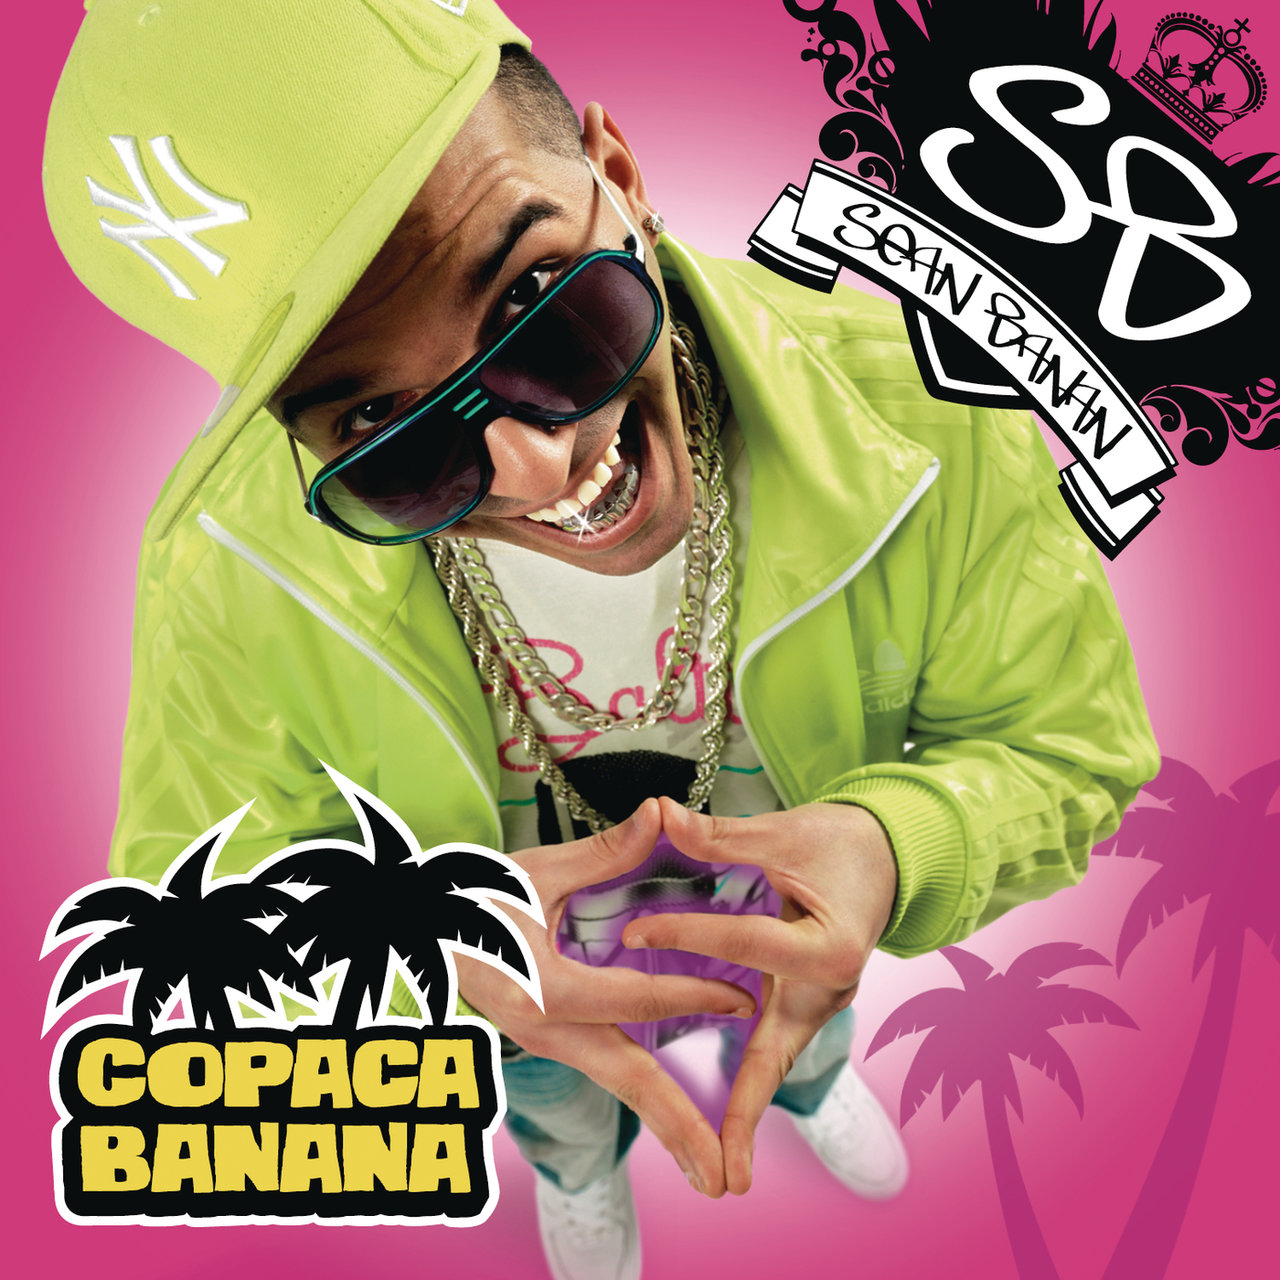 Sean Banan — Copacabanana cover artwork